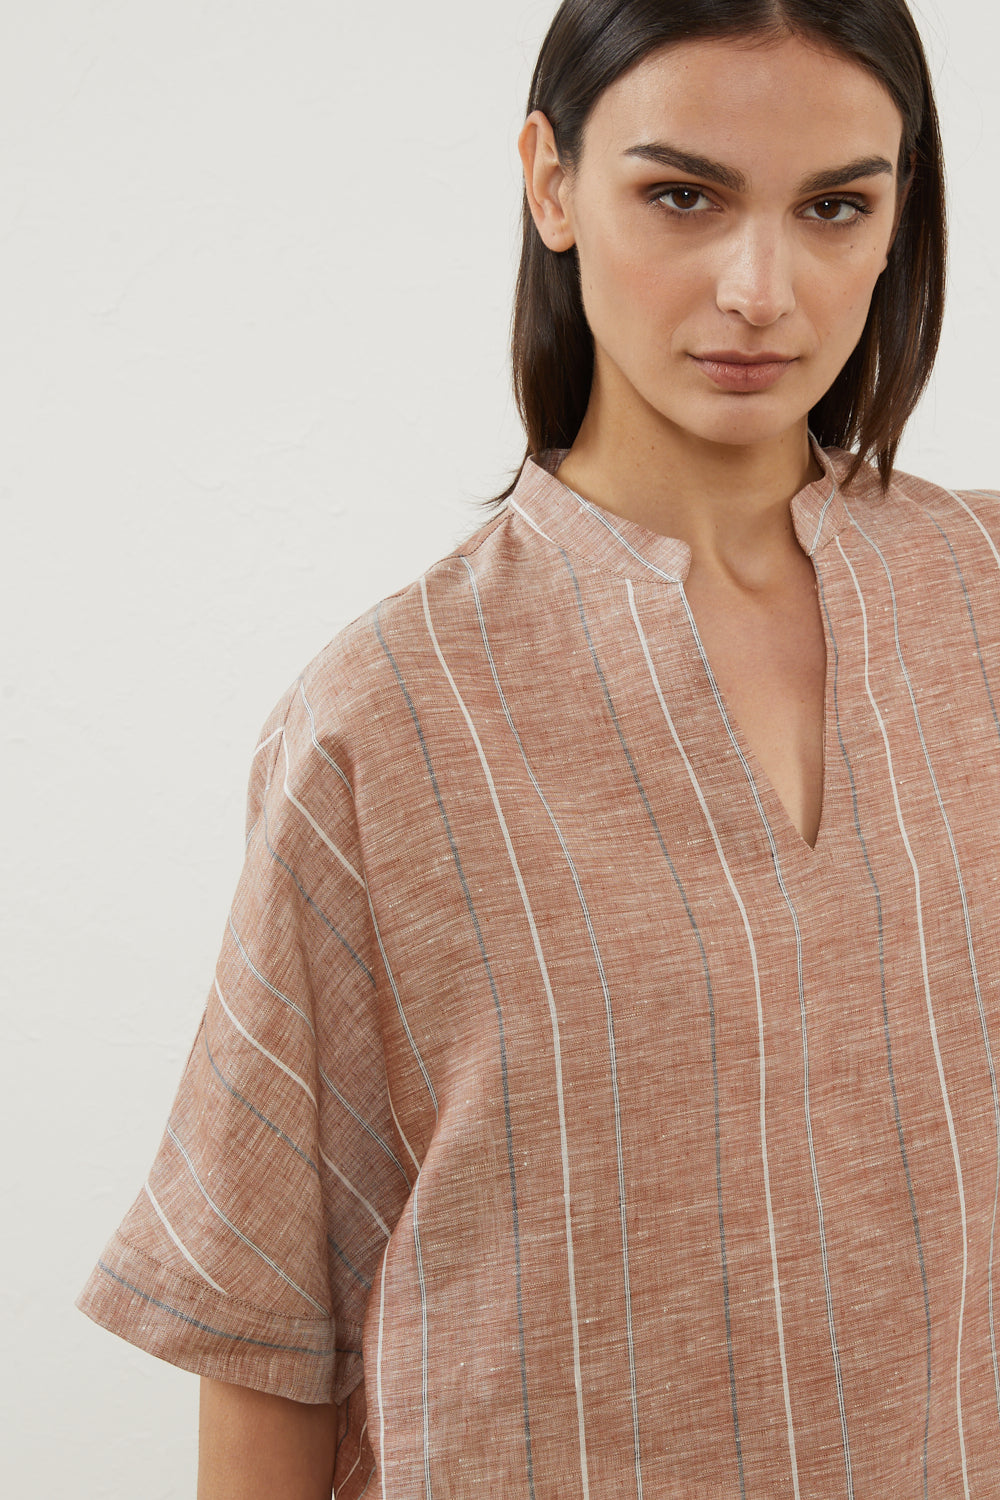 terracotta linen shirt